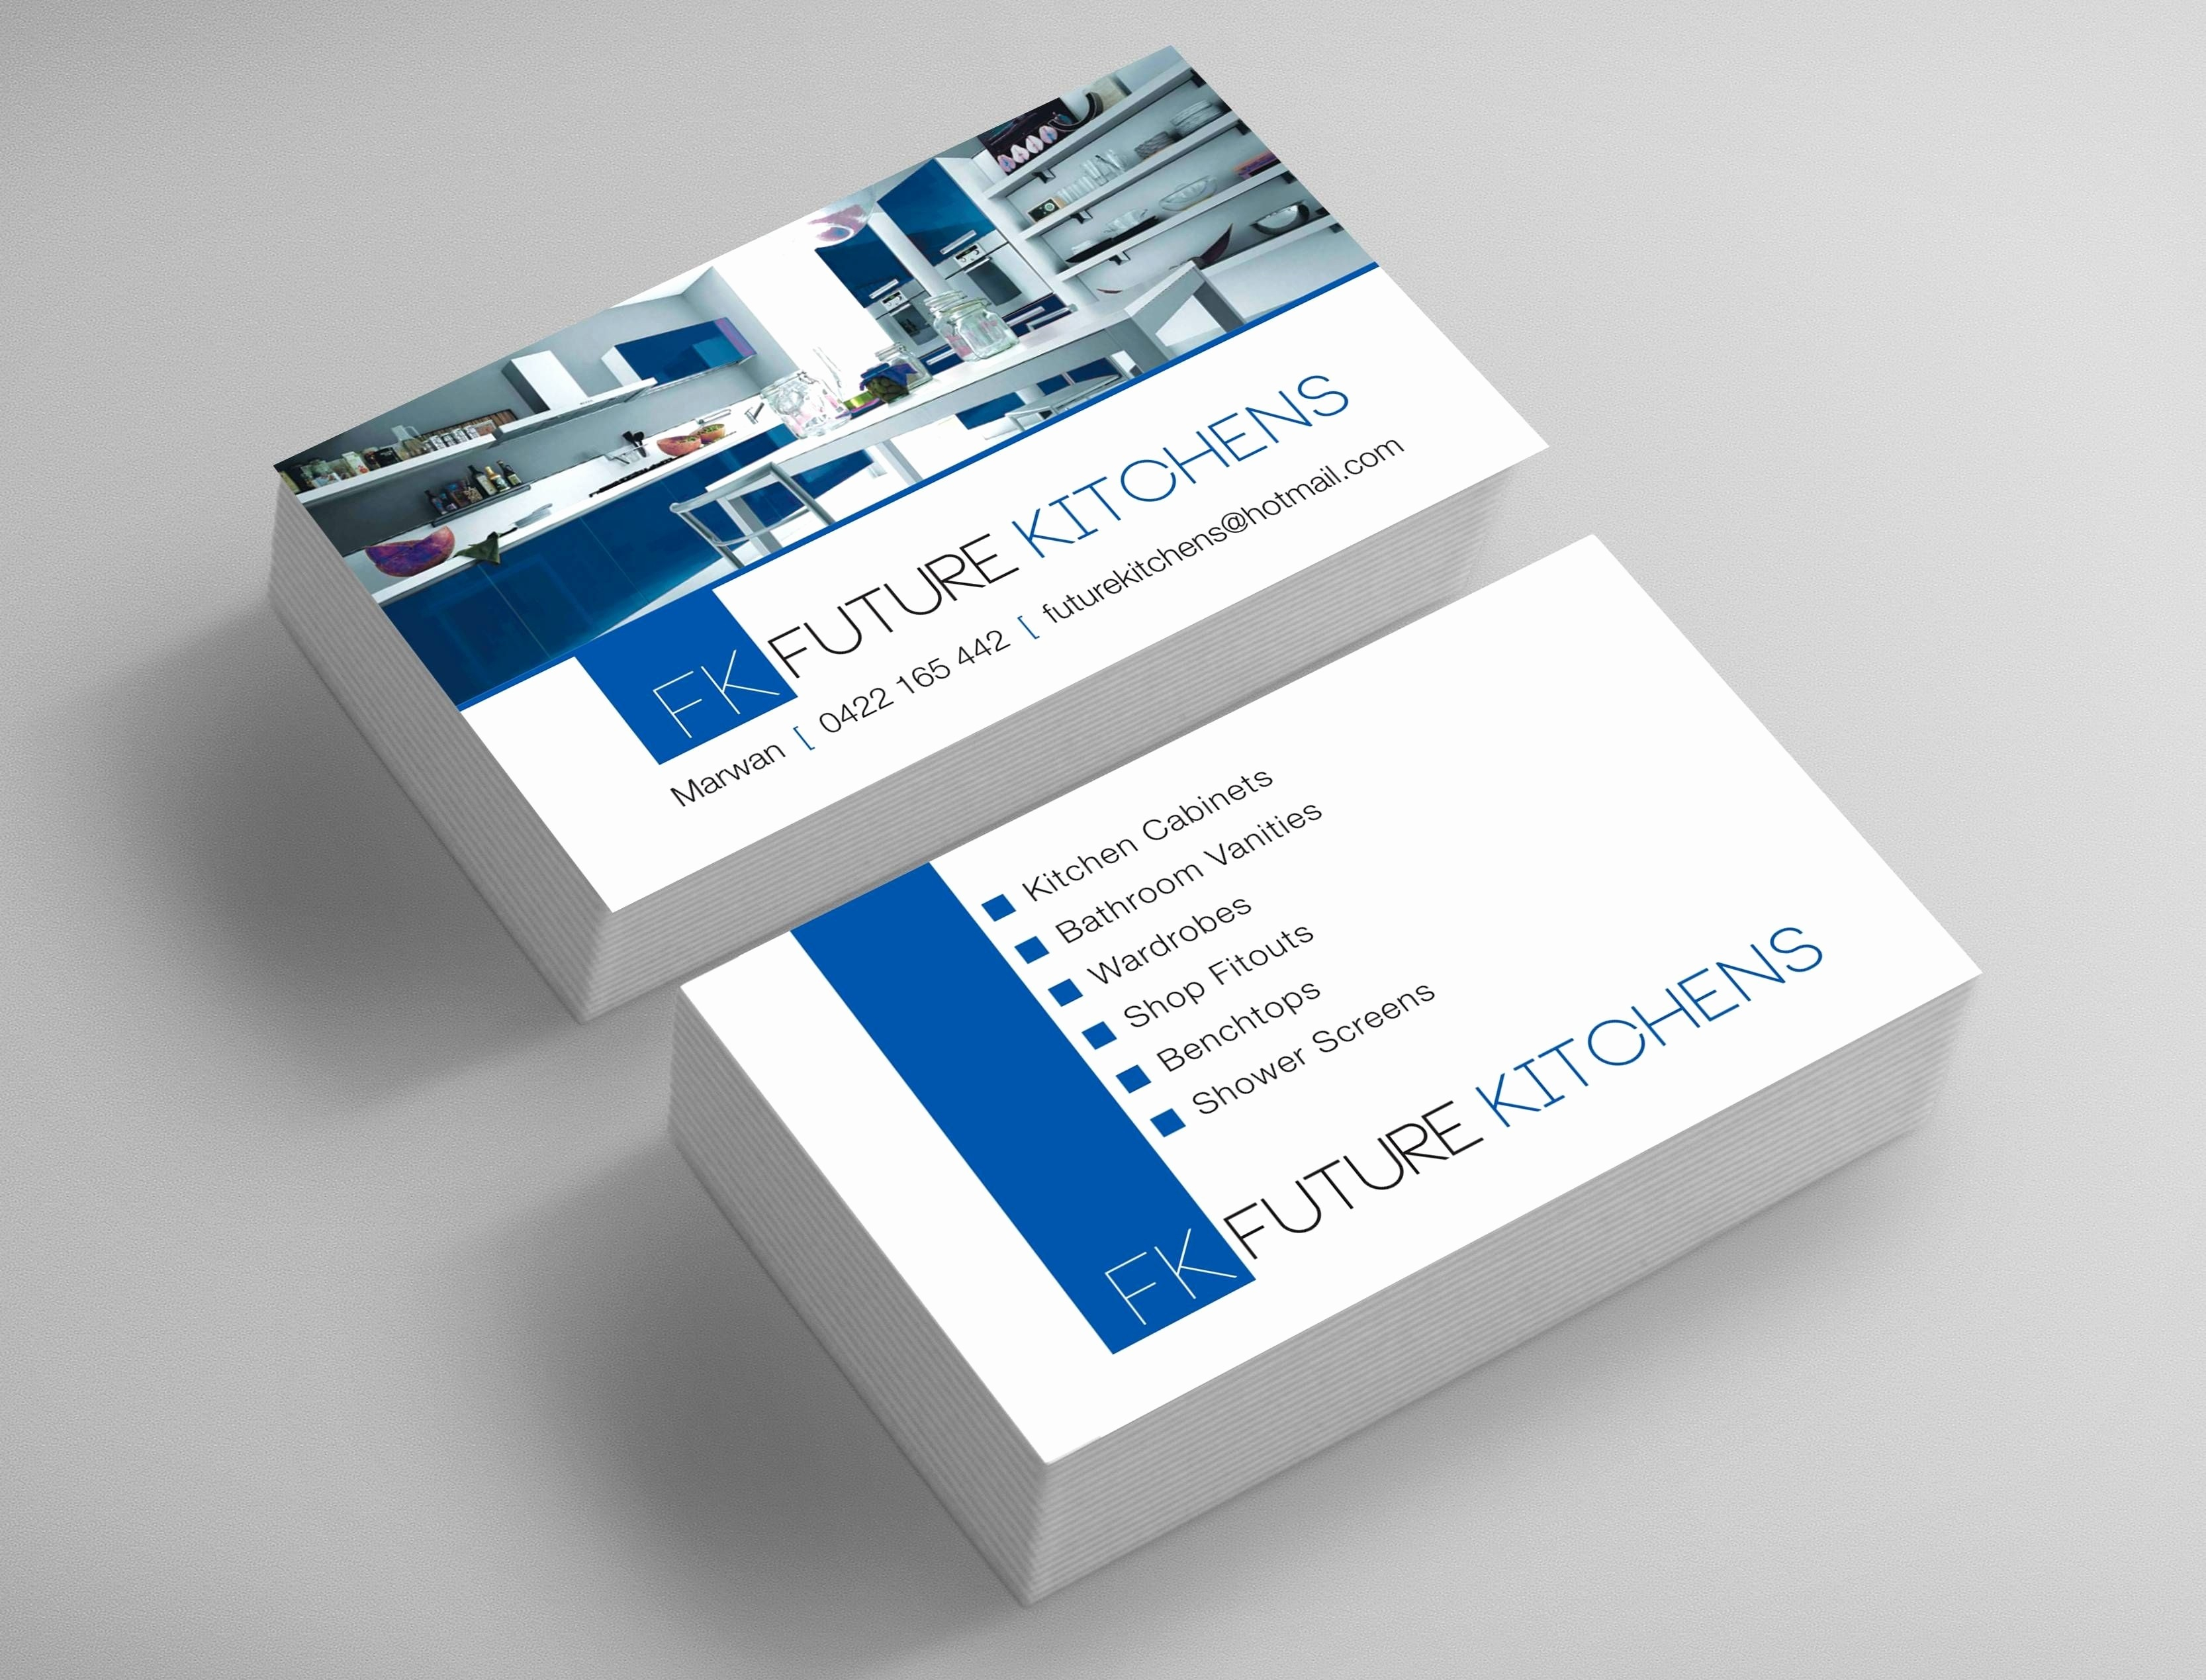 Customizable Business Card Template Free | Creative Atoms Regarding Advocare Business Card Template